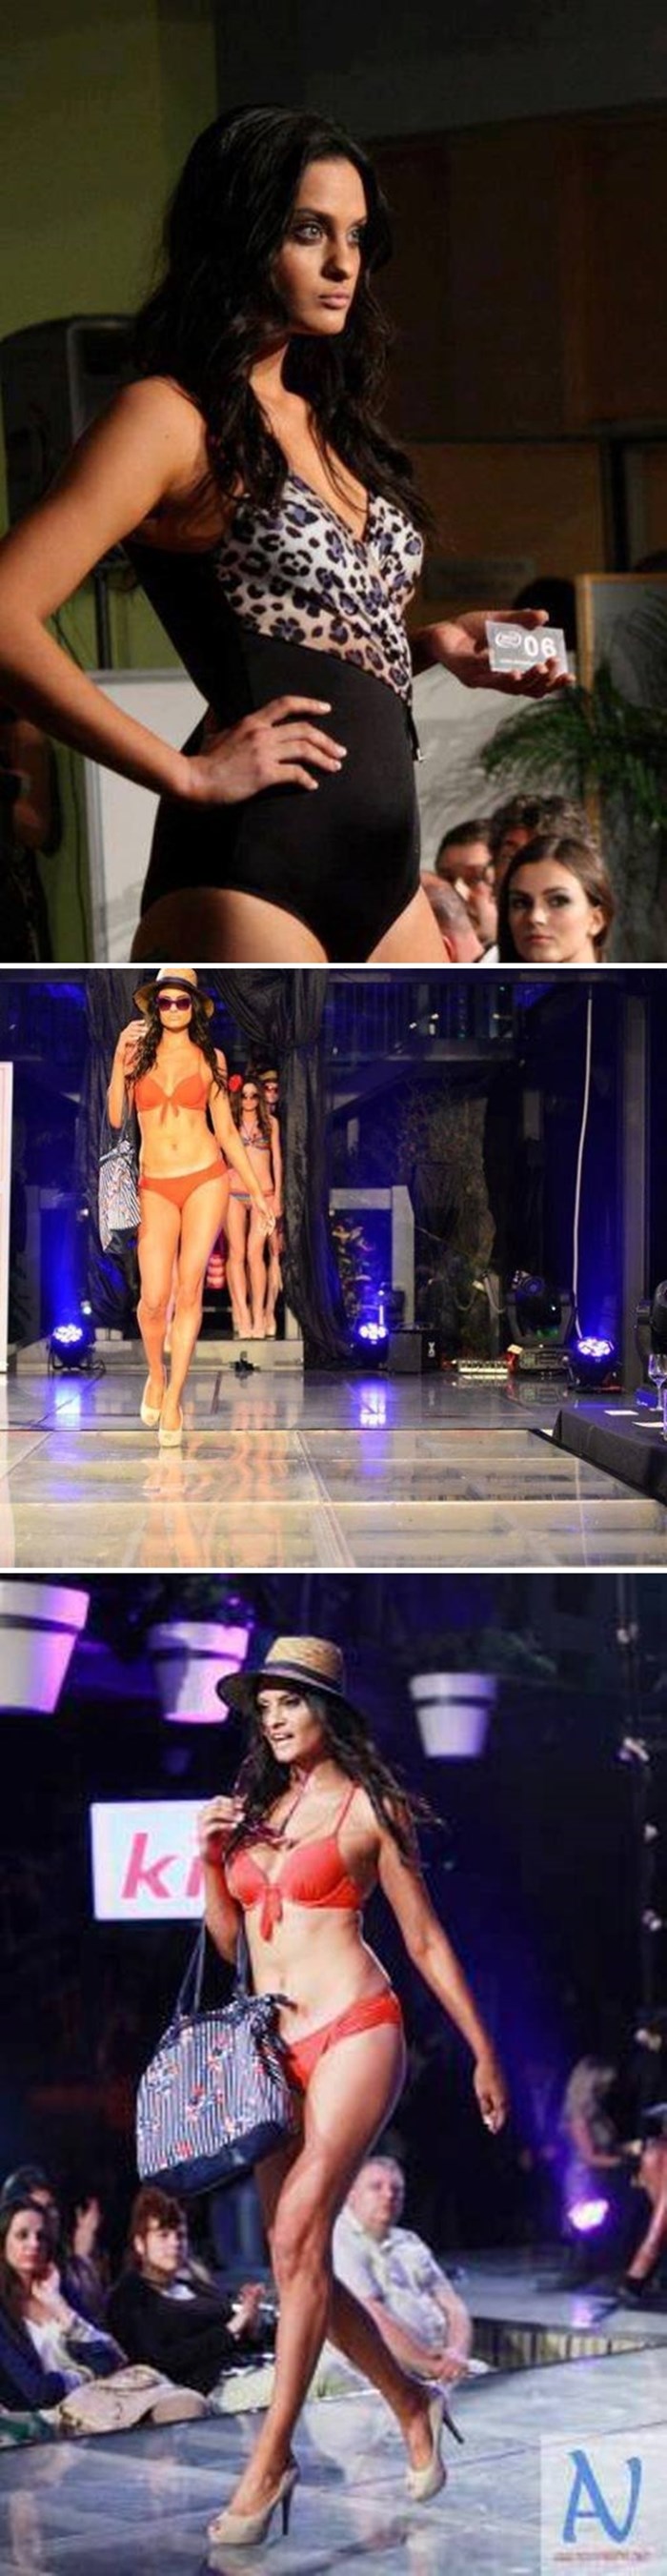 Index Miss bikini 2013: Doroteja Stolnik